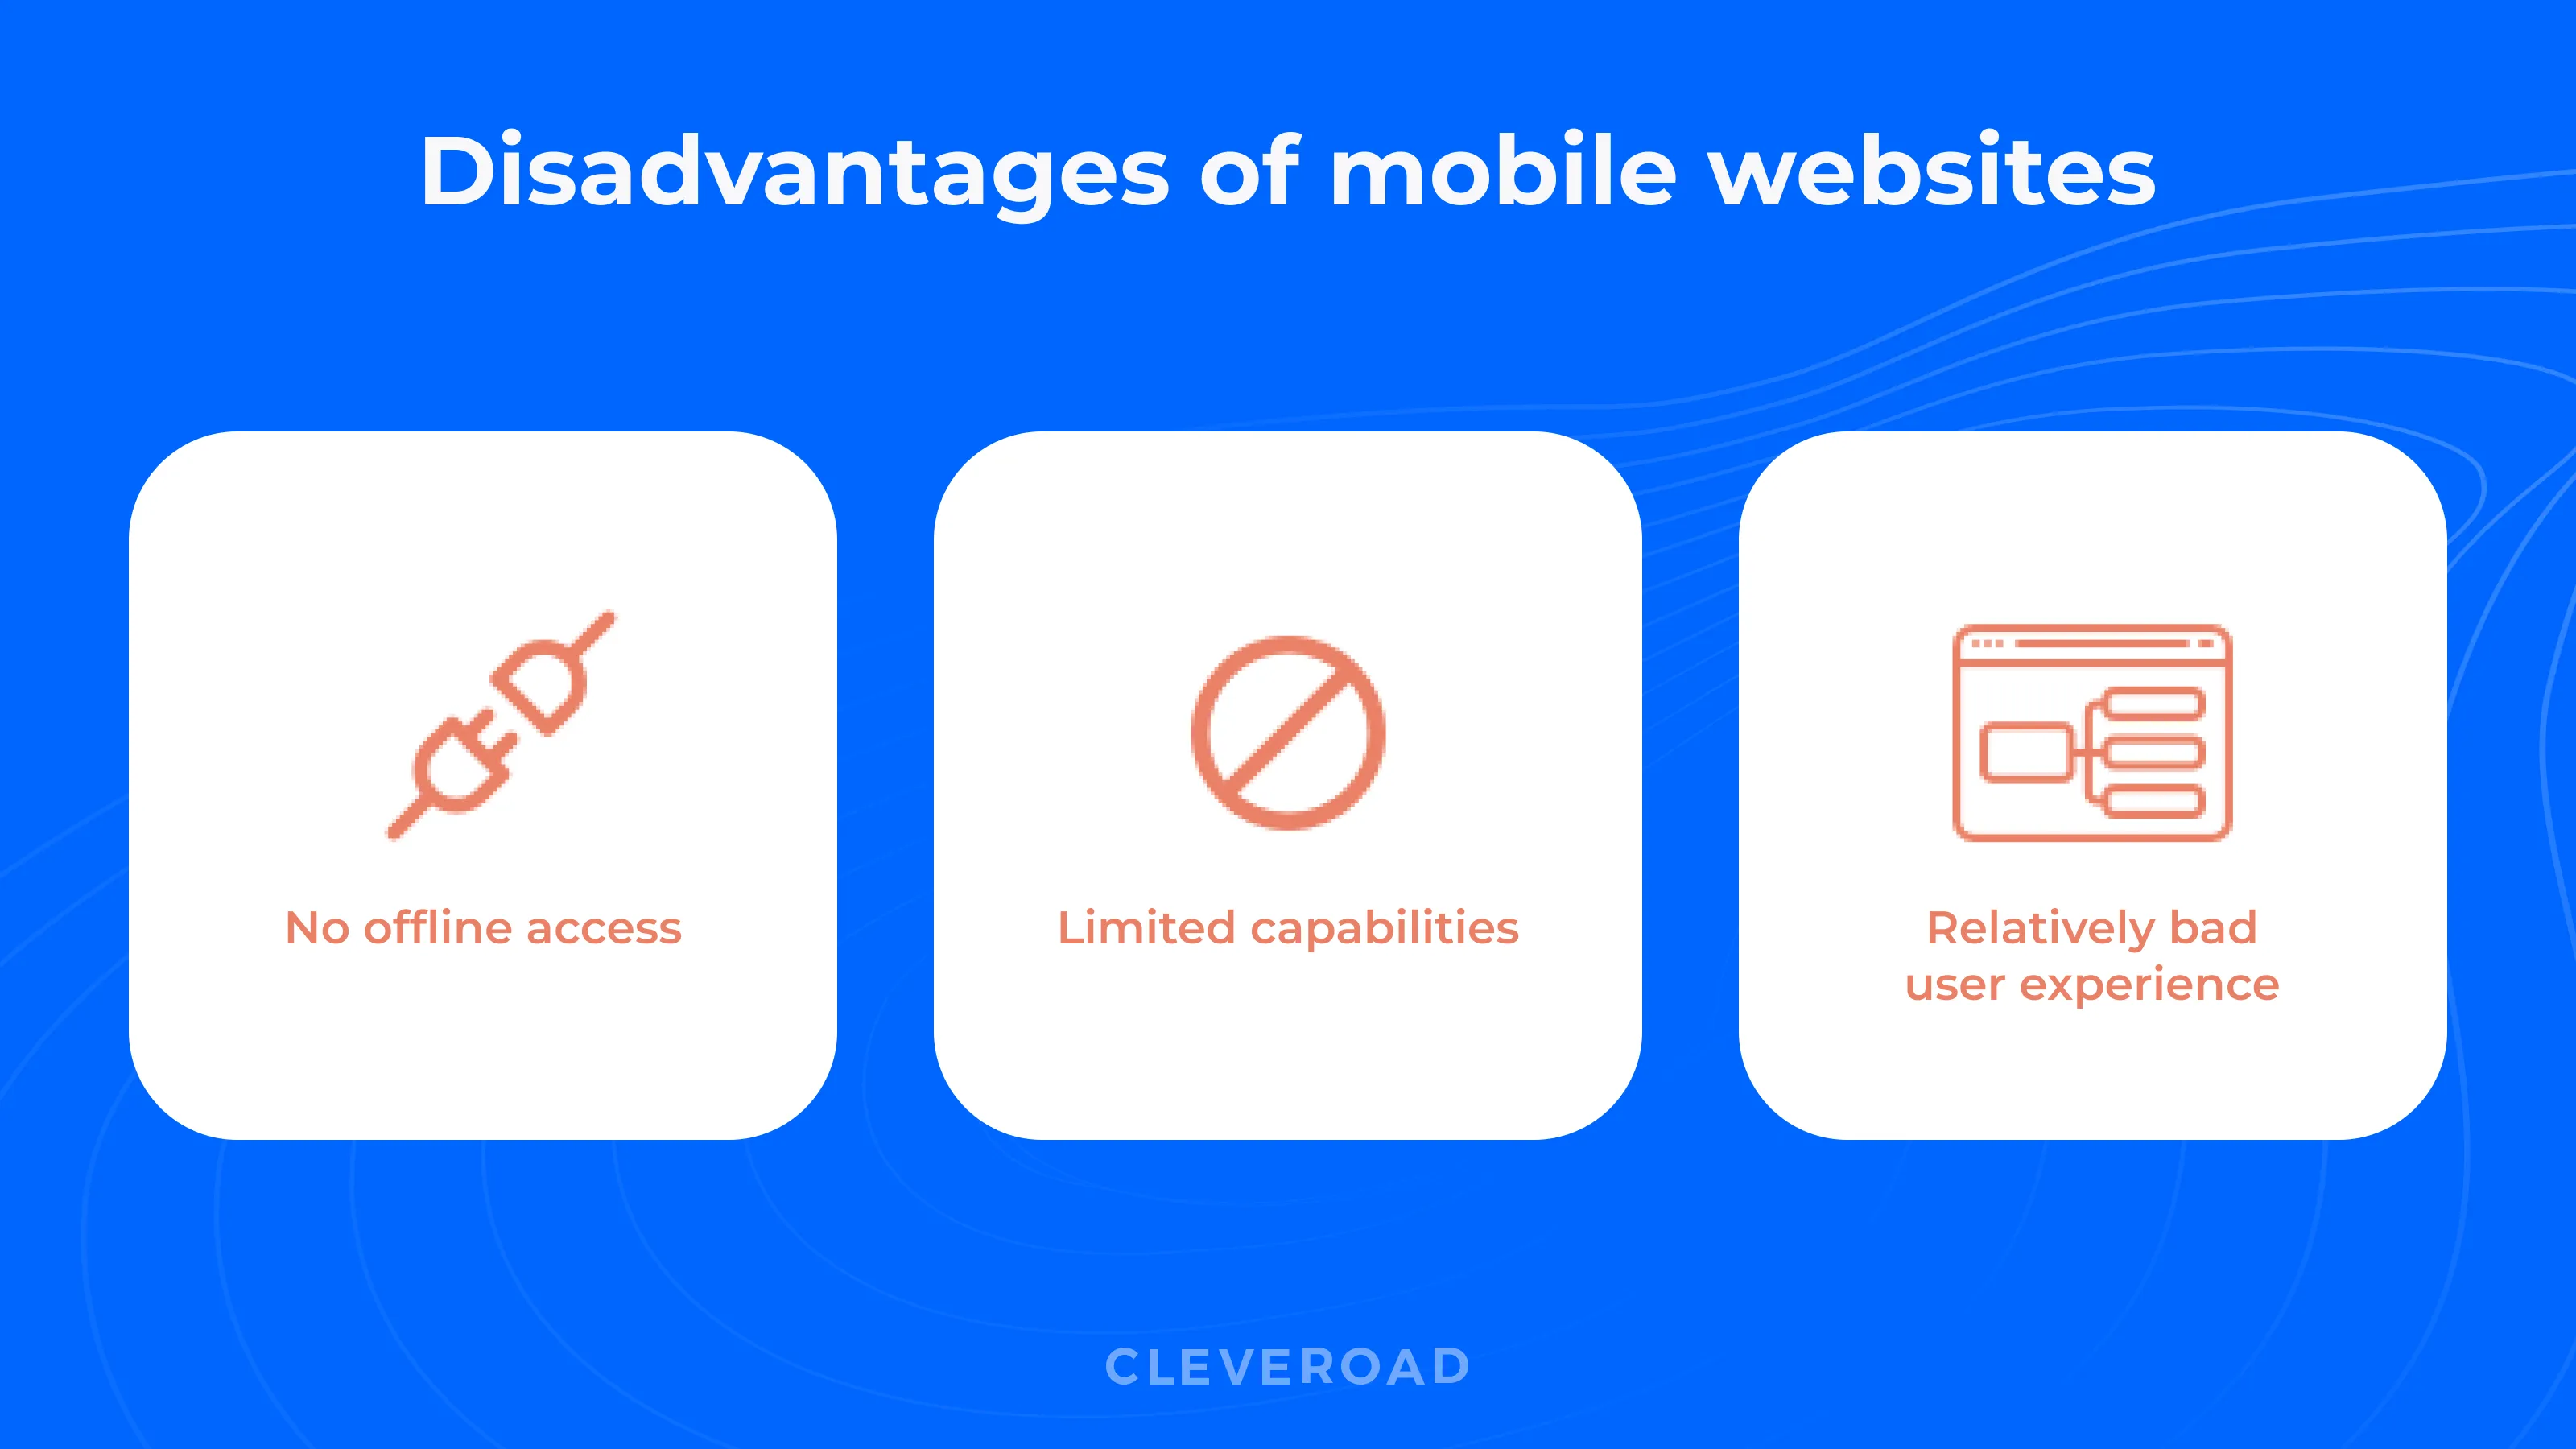 Mobile apps versus mobile web: Top disadvantages of mobile websites